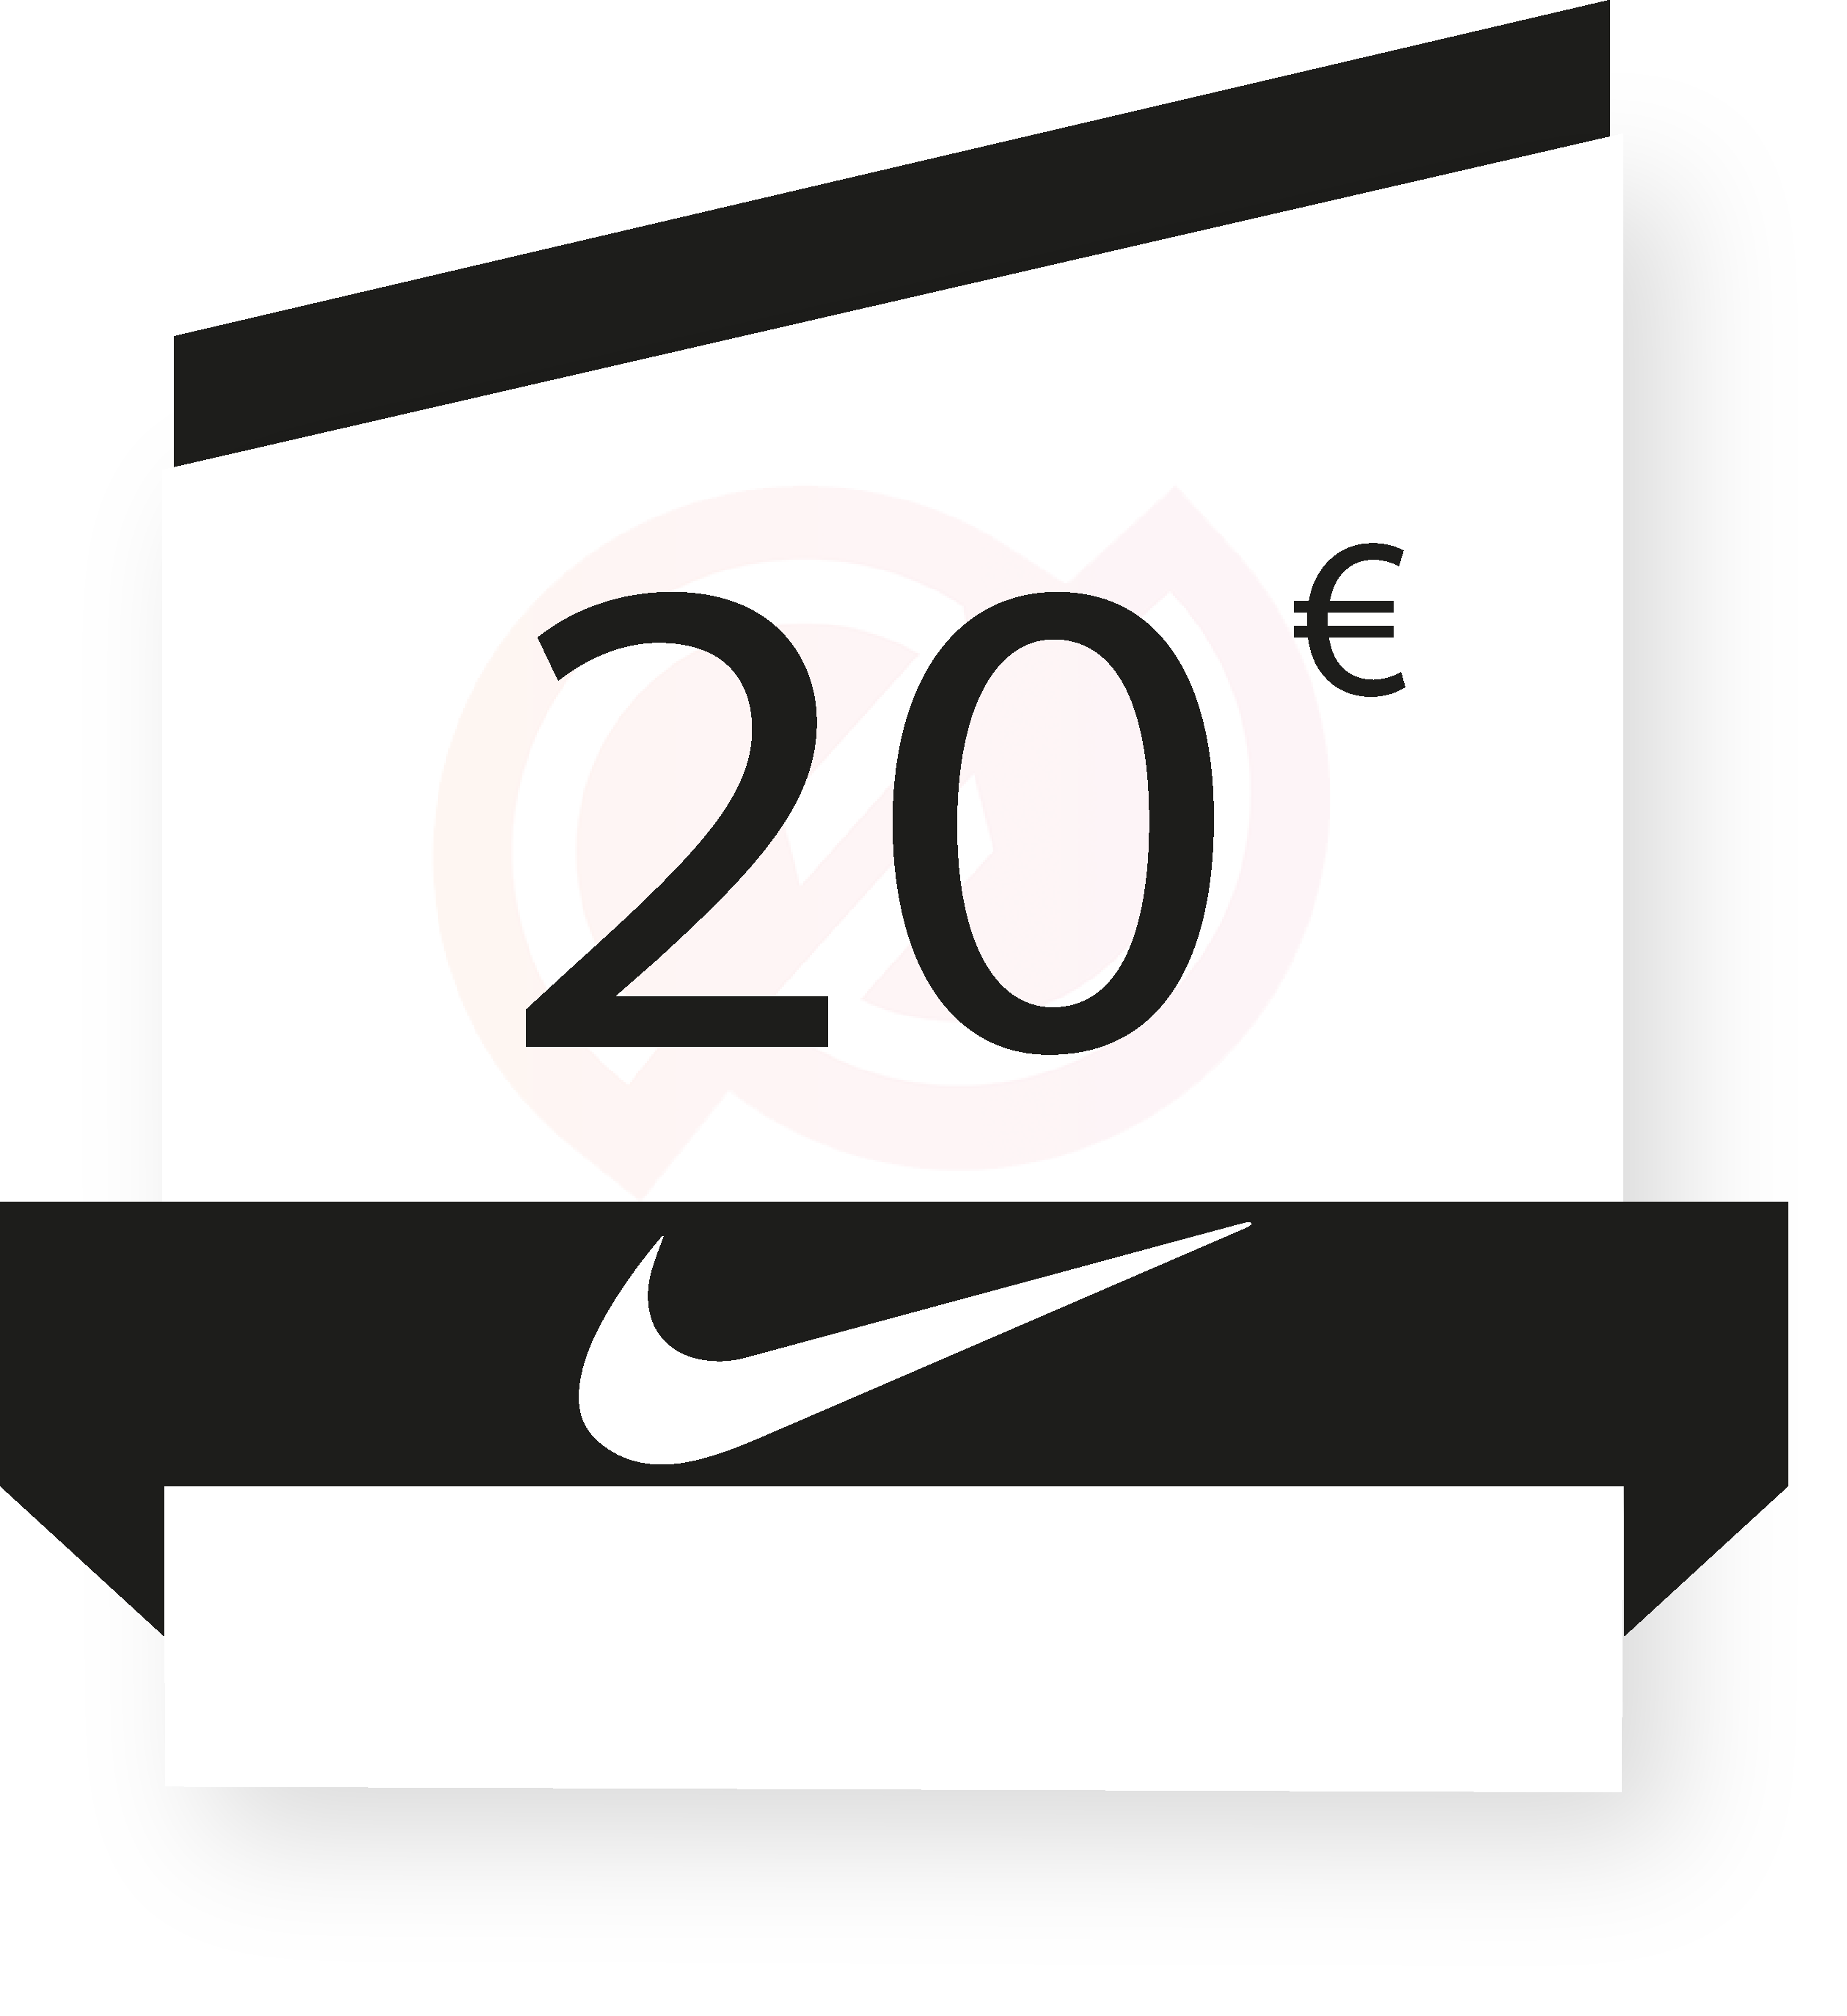 Nike 20€